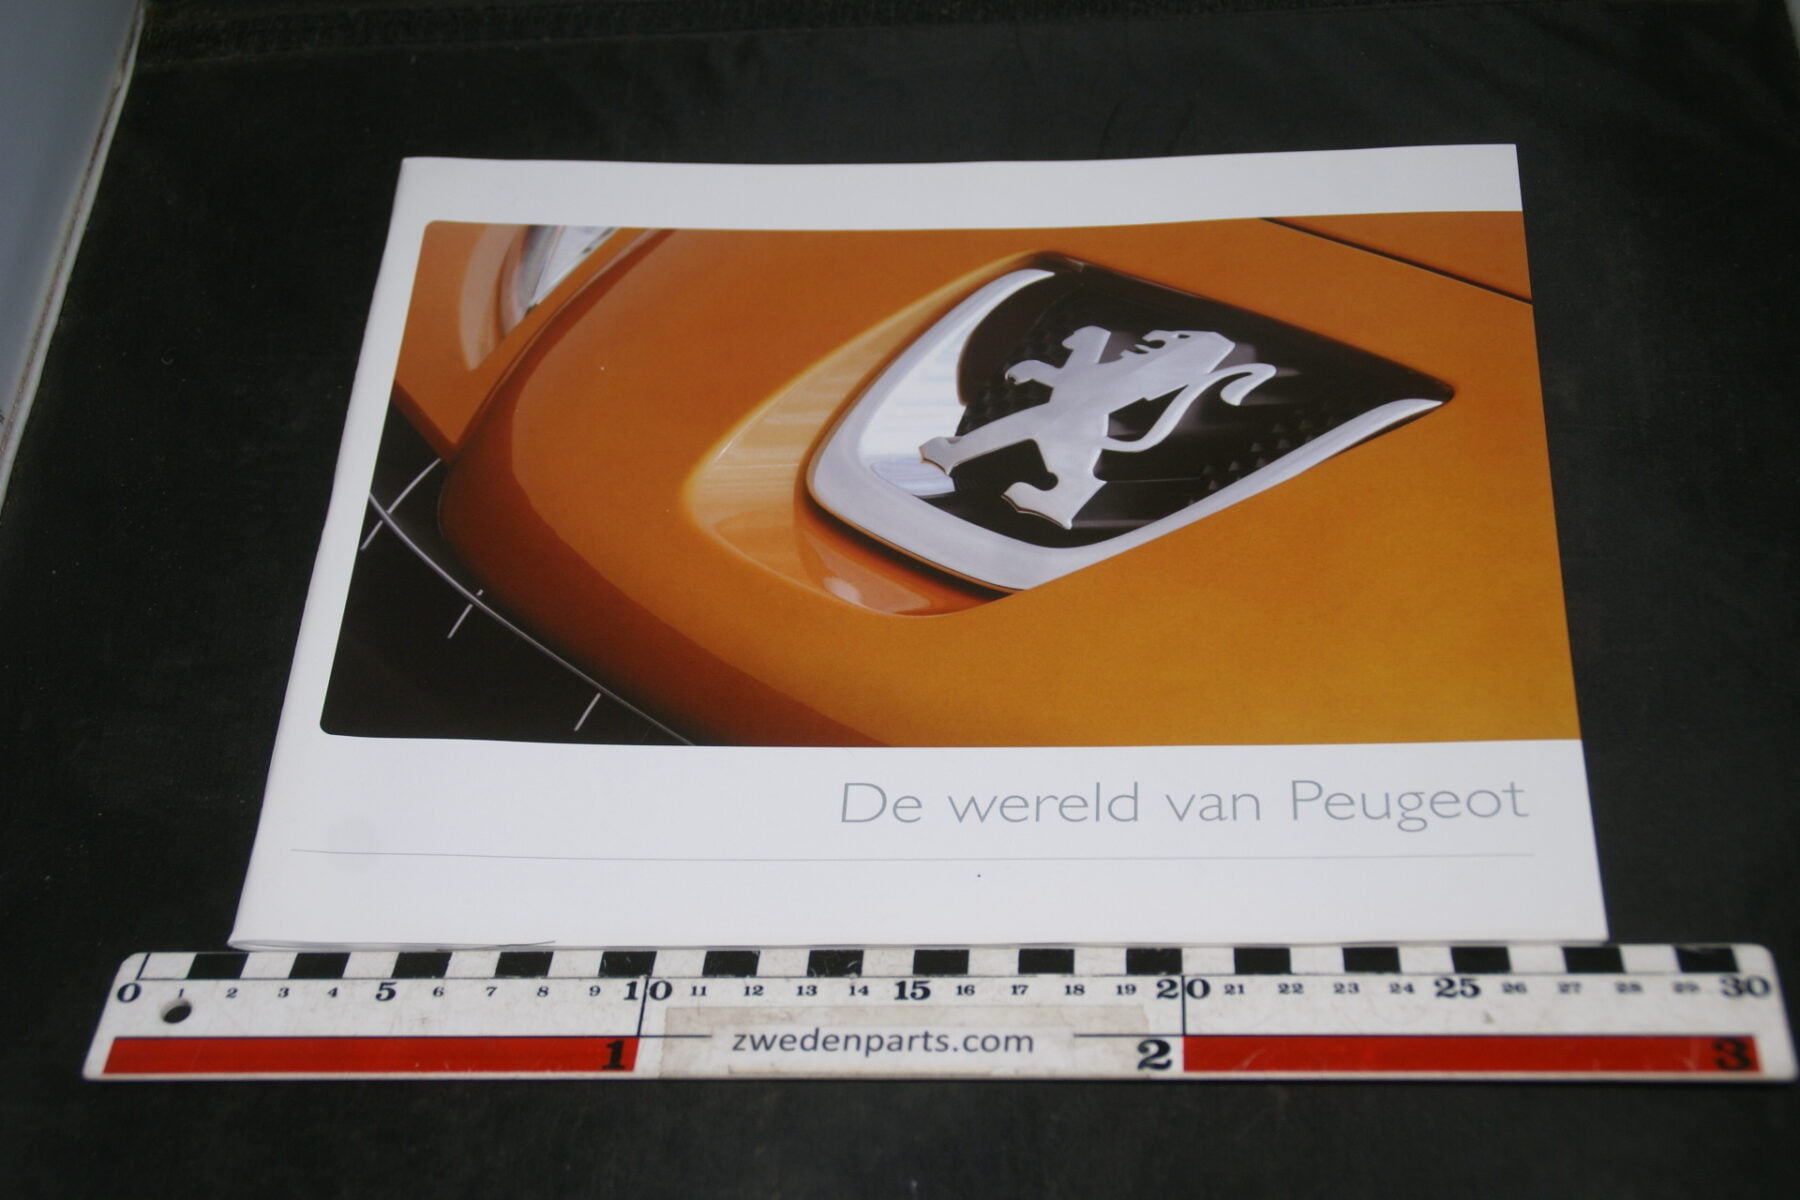 DSC05531 2007 brochure Peugeot de wereld van